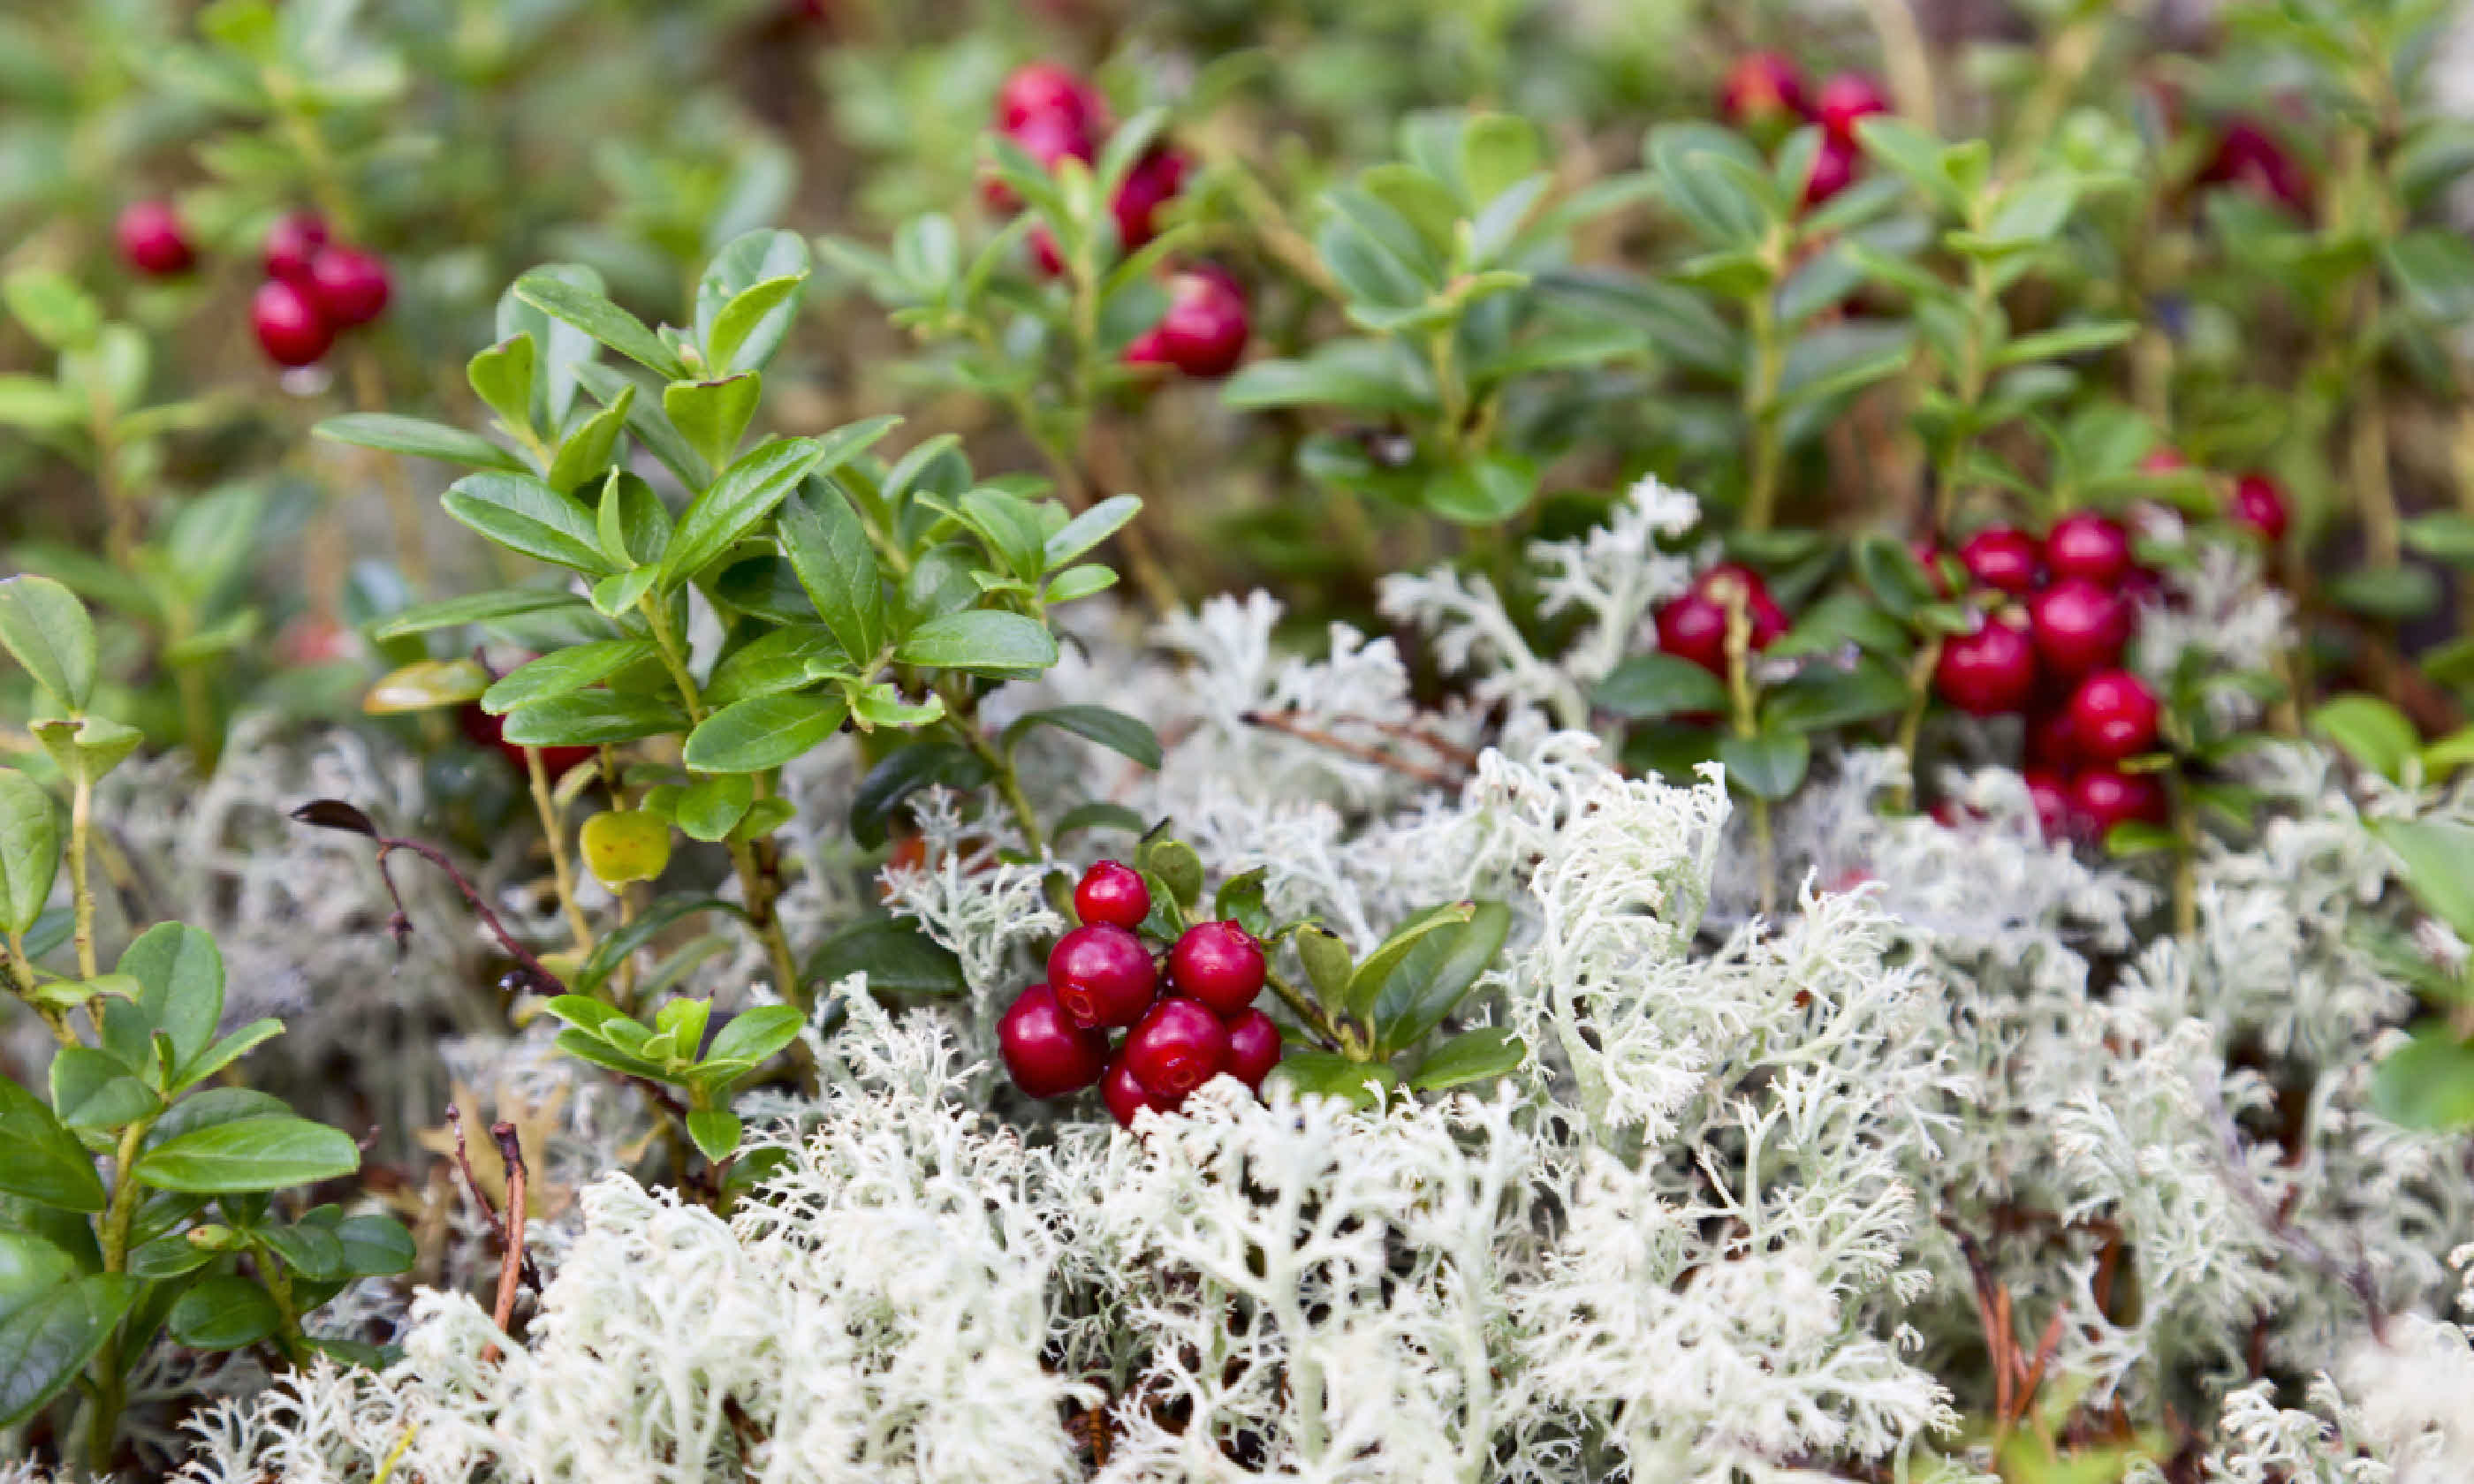 Wild lingonberries (Shutterstock)